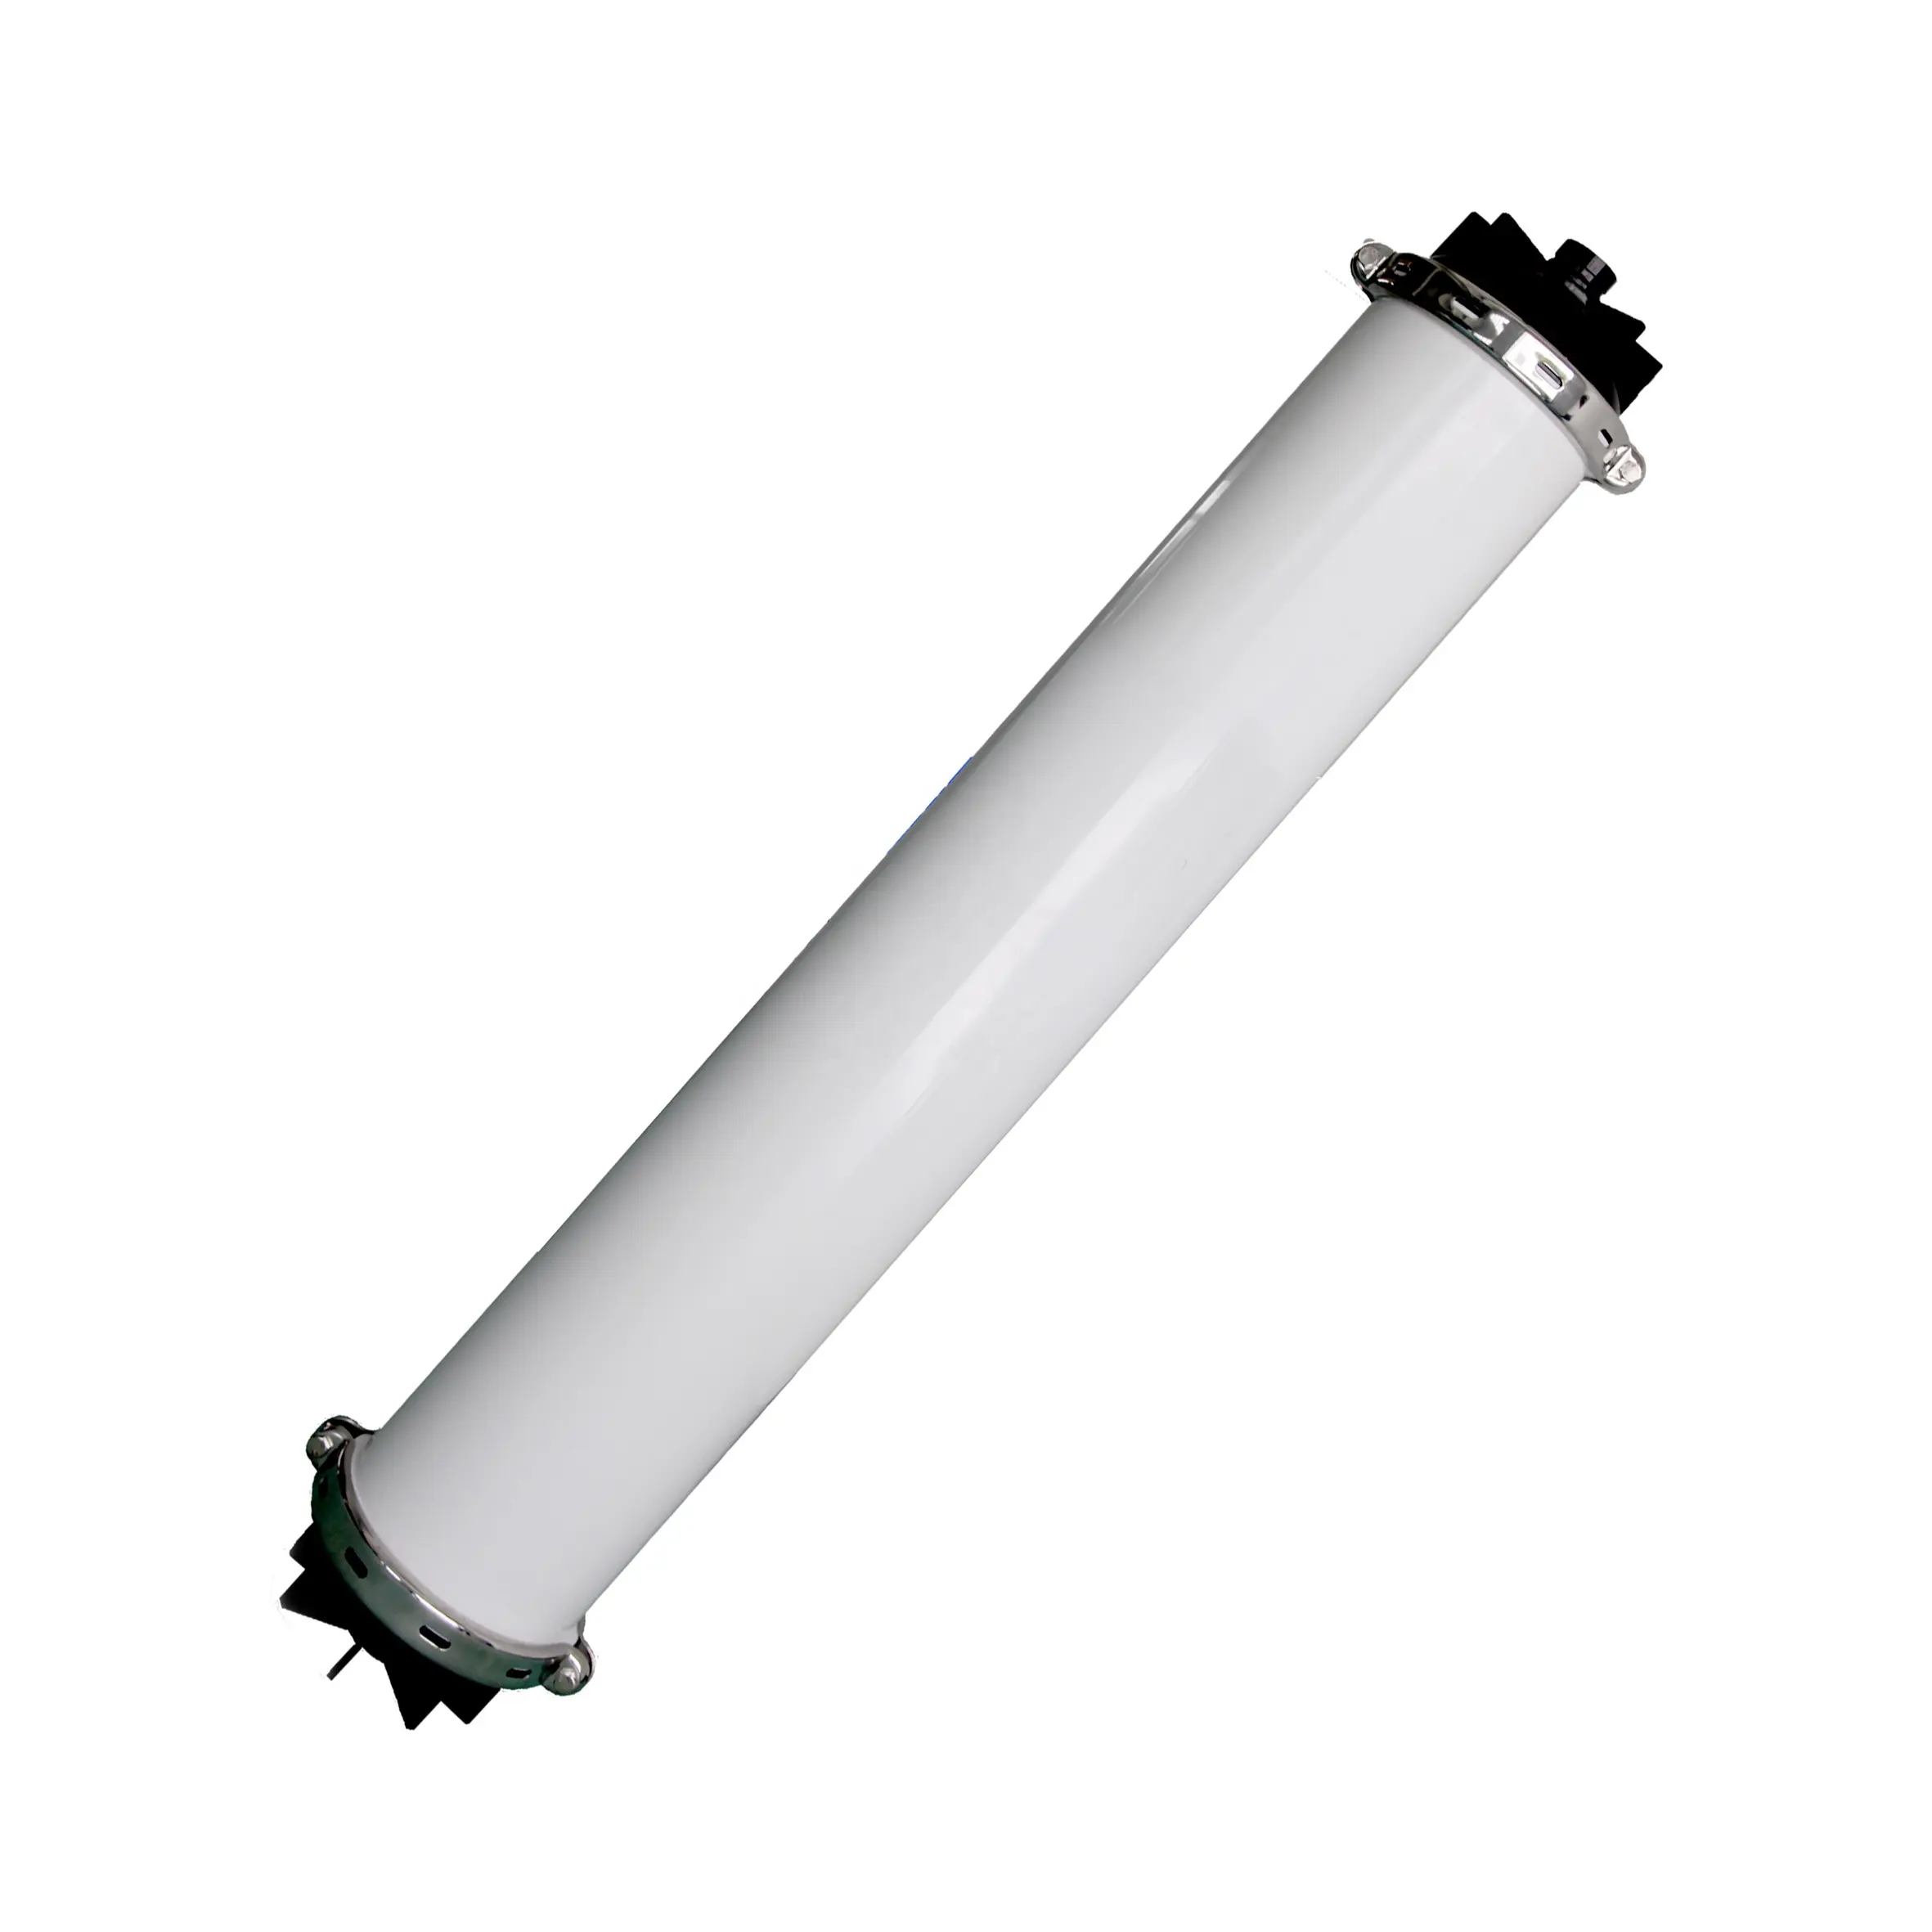 Kolay kullanım ve en büyük etkili alan ile içi boş Fiber Ultra filtrasyon filtre membran UF-8060